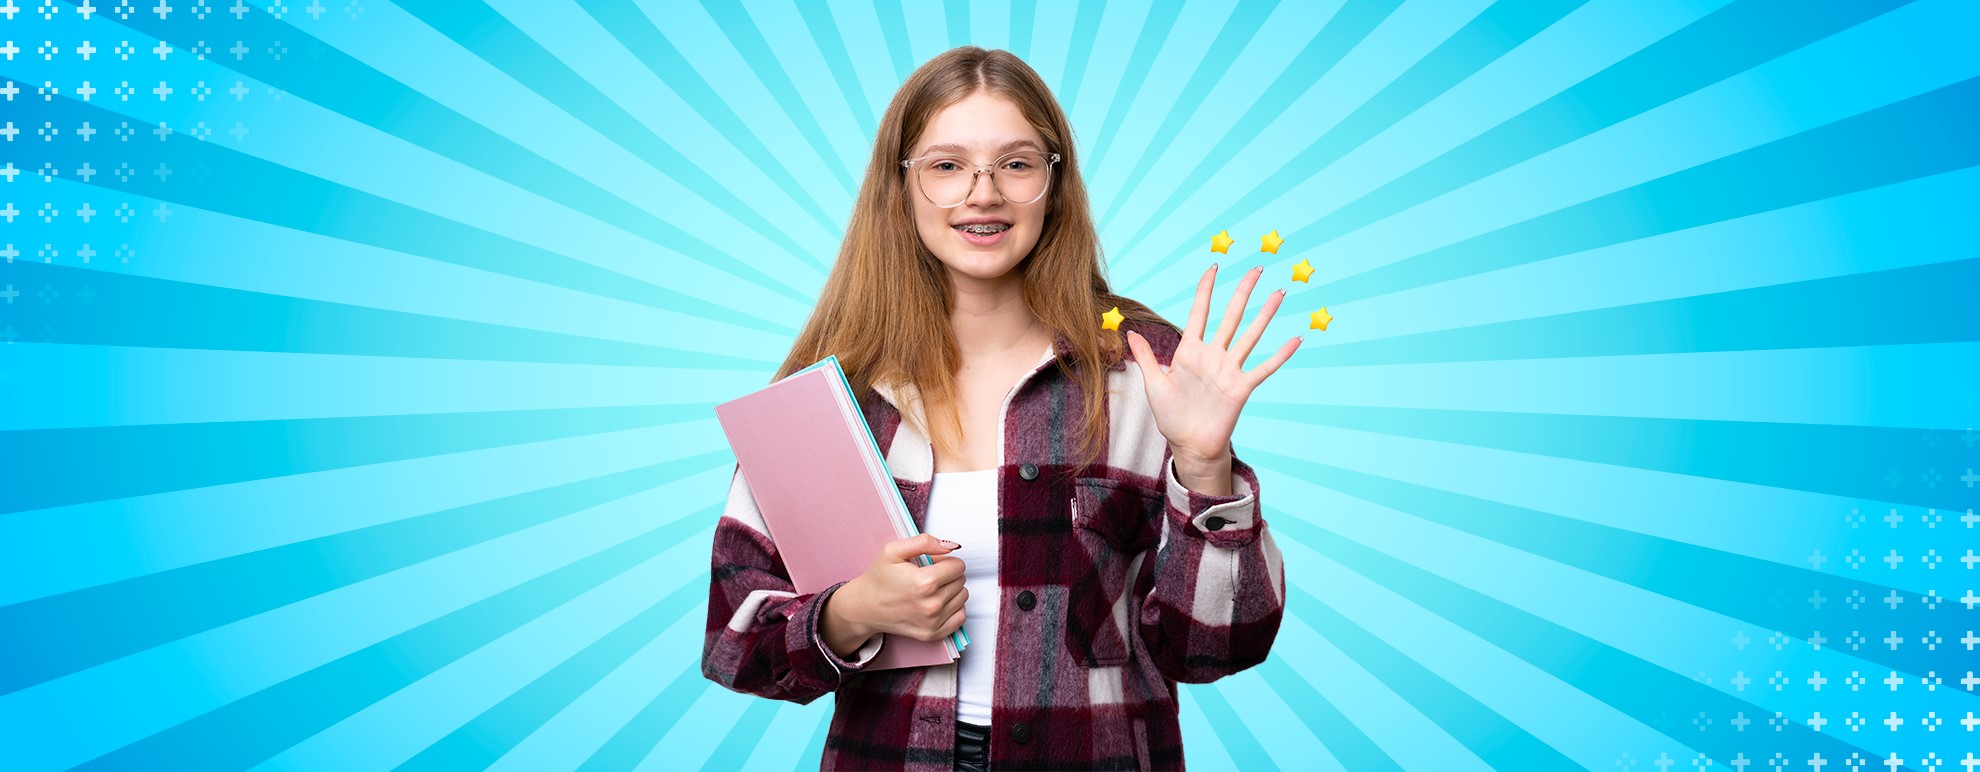 desenho de uma adolescente, de óculos, segurando um caderno em sua mão direita, com a mão esquerda levantada, mostrando os cinco dedos, para indicar as 5 dicas do texto